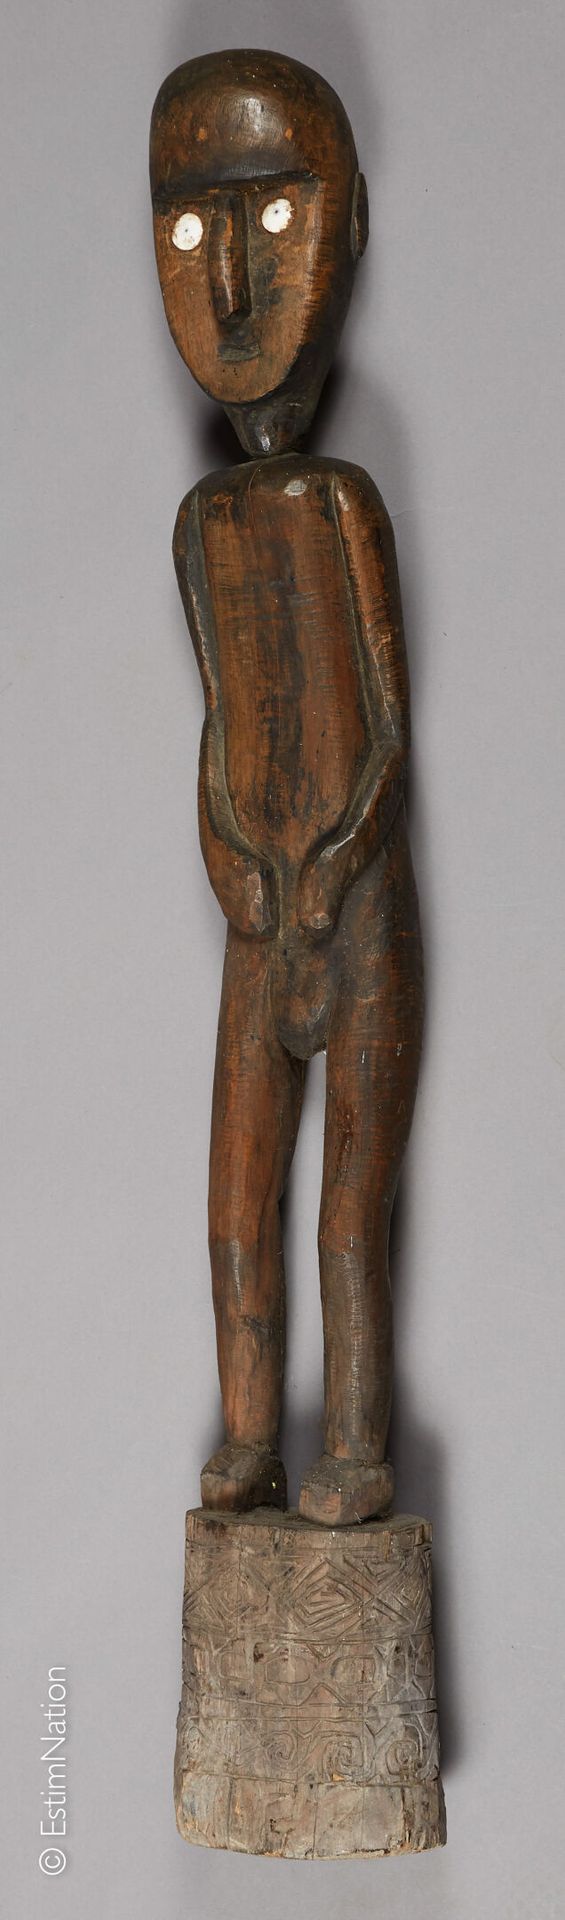 TIMOR TIMOR



Tau-tau de madera exótica tallada, de pie, con las manos en el vi&hellip;